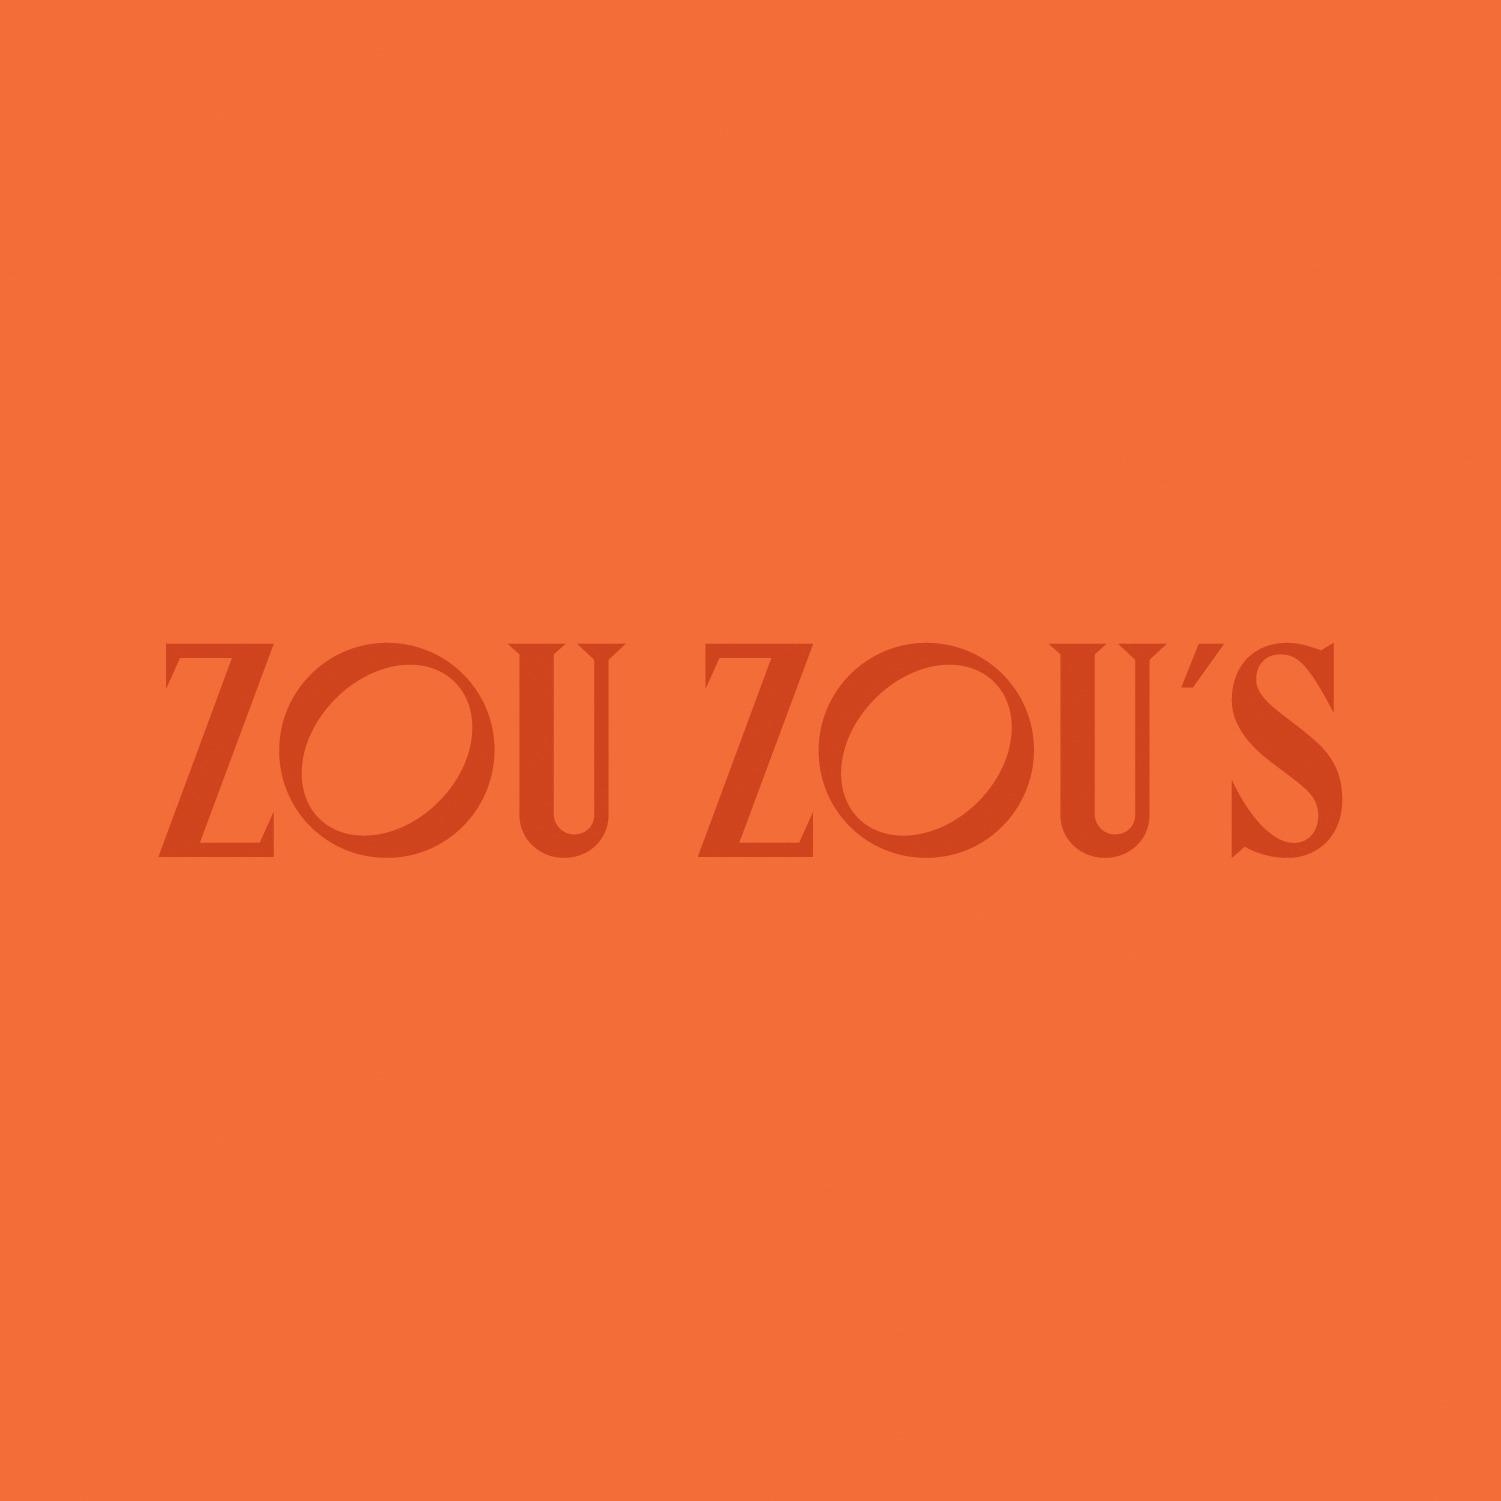 Zou Zou’s - New York, NY 10001 - (212)380-8585 | ShowMeLocal.com